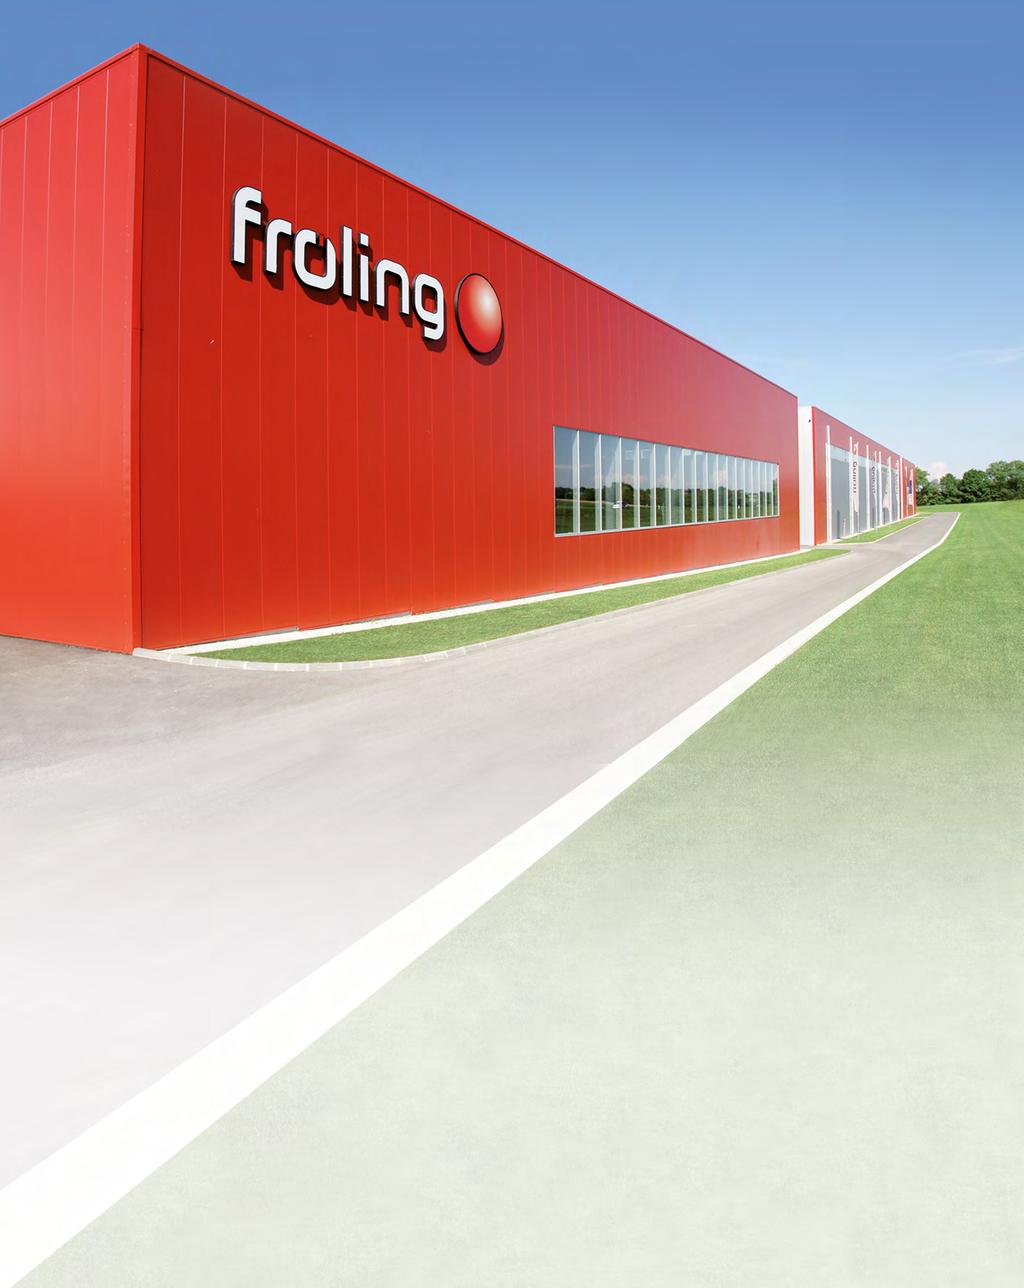 High-tech utan gränser I mer än femtio år har Fröling ägnat sig åt effektiv användning av energikällan trä. Idag står namnet Fröling för modern biomassateknik.